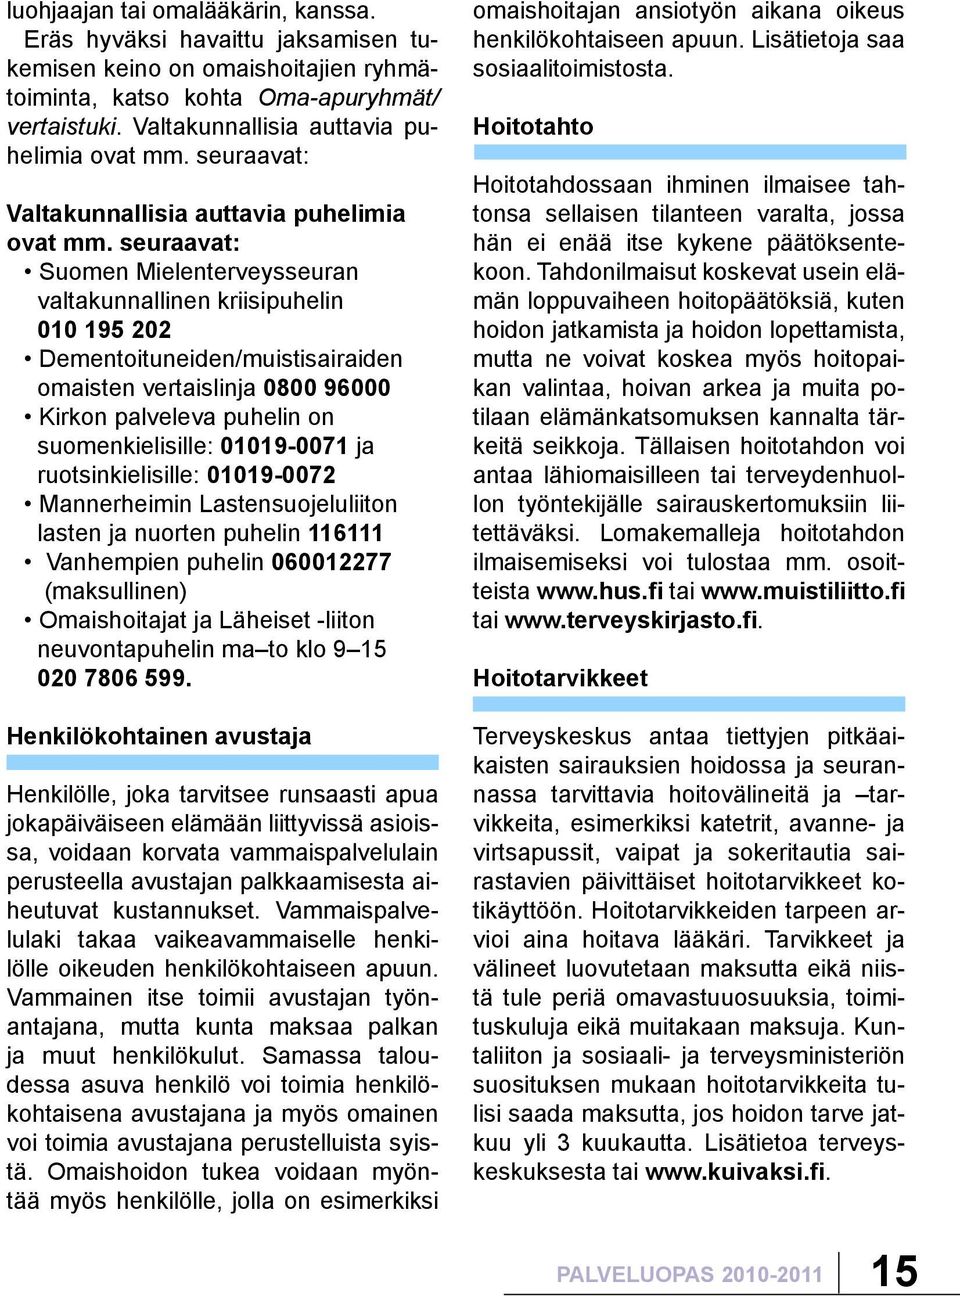 seuraavat: Suomen Mielenterveysseuran valtakunnallinen kriisipuhelin 010 195 202 Dementoituneiden/muistisairaiden omaisten vertaislinja 0800 96000 Kirkon palveleva puhelin on suomenkielisille: